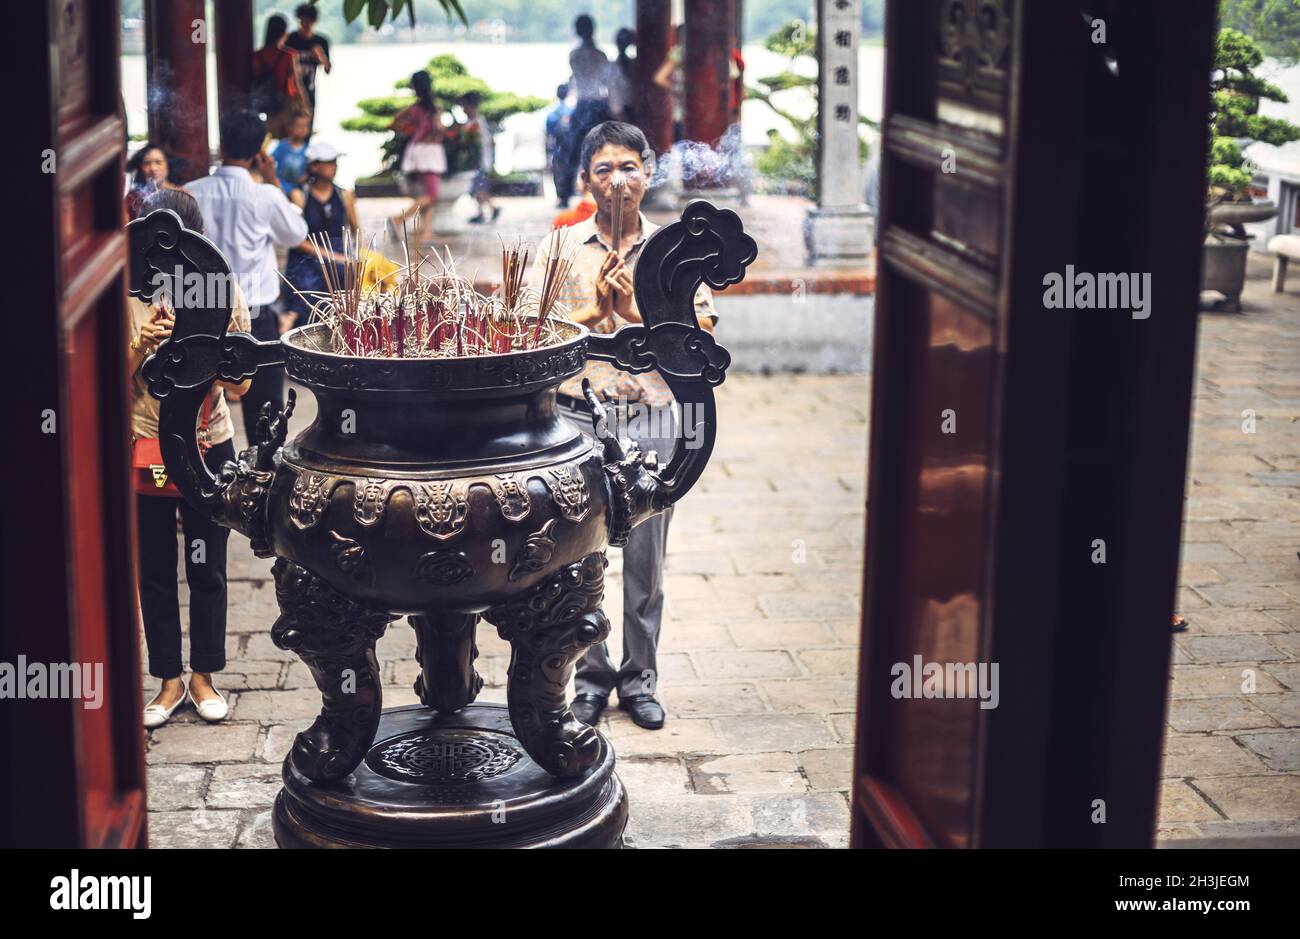 HA NOI, VIET NAM - JULY 13, 2015: Voi Phuc pagoda in Hanoi, Viet Nam Stock Photo